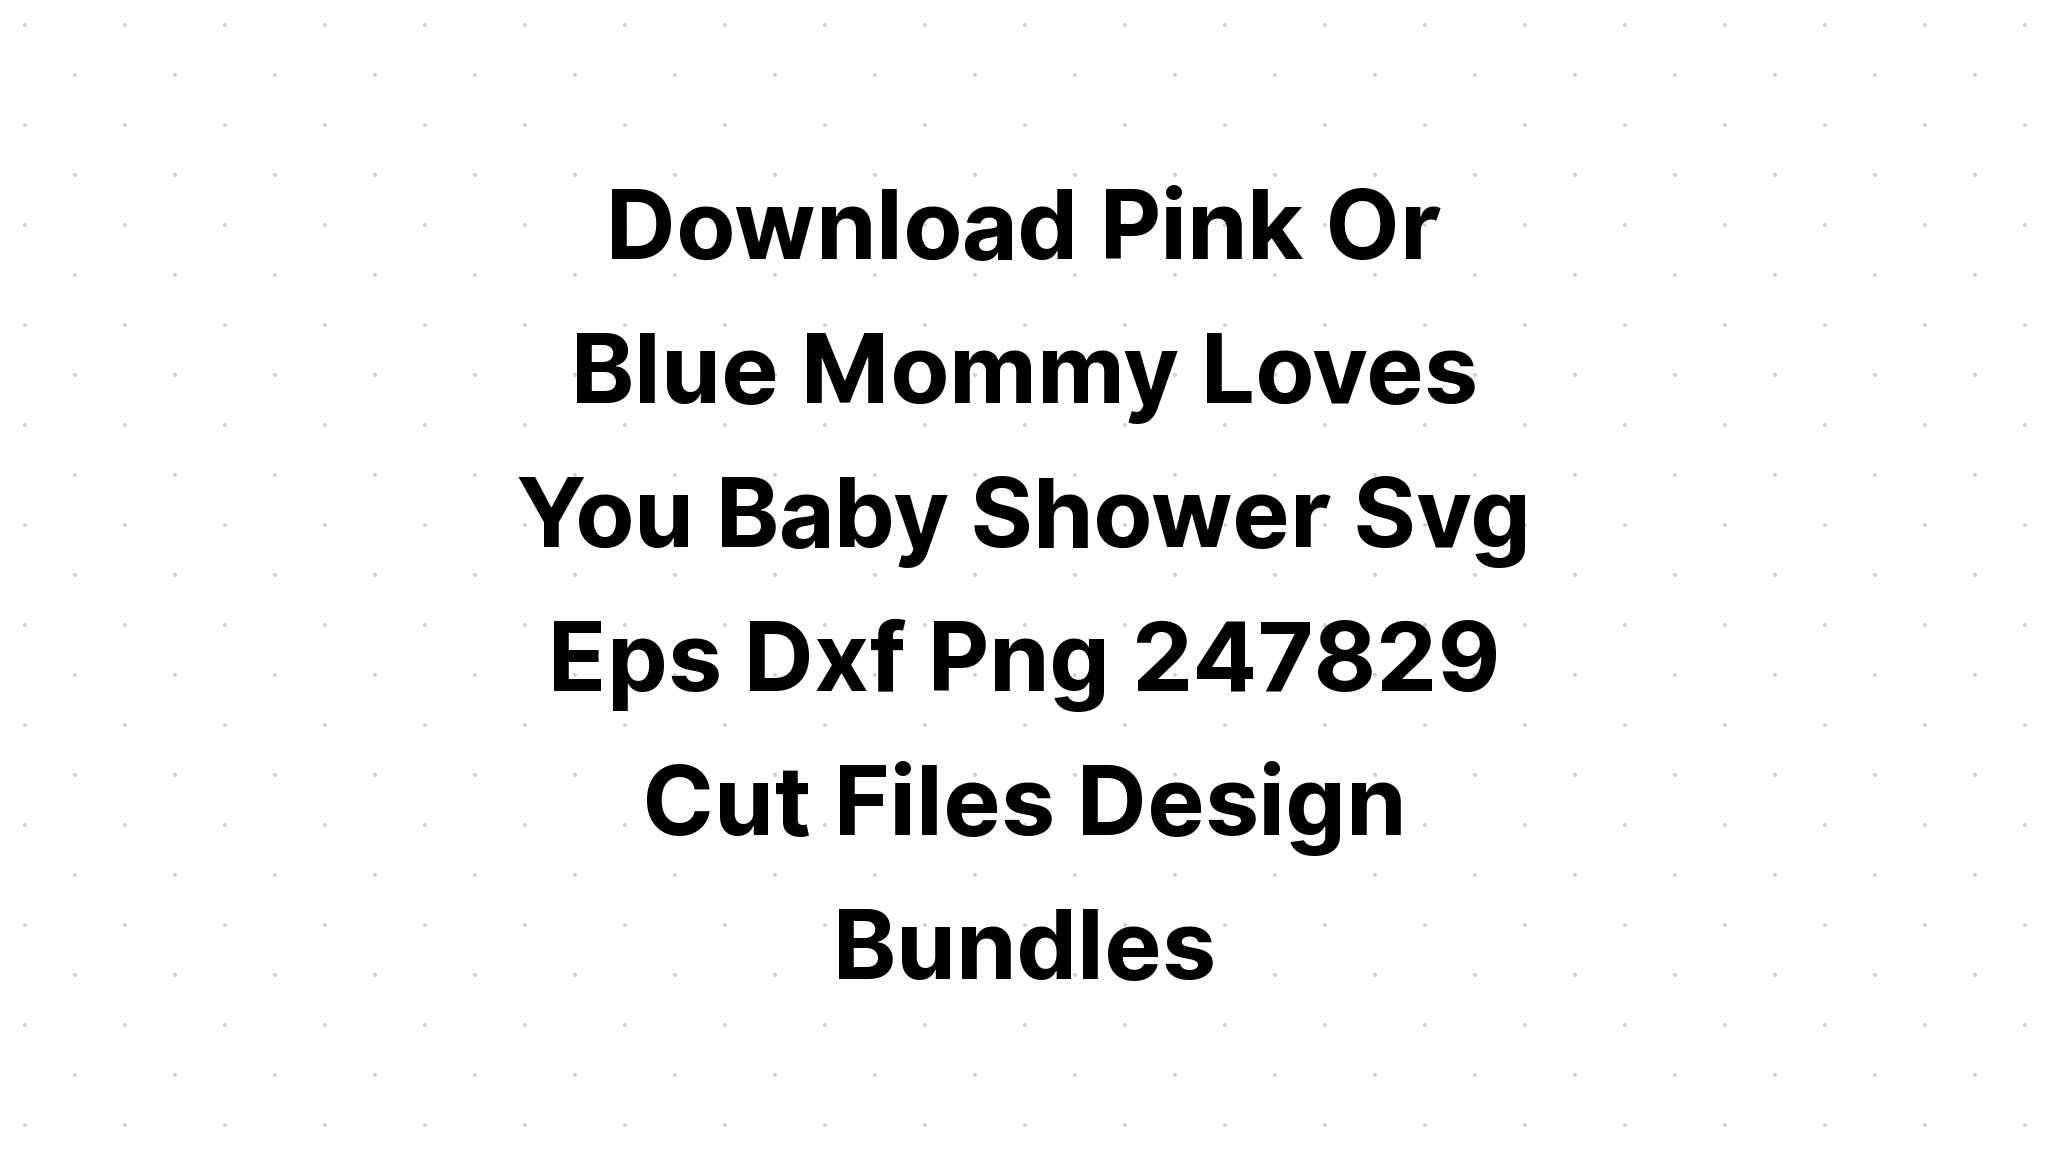 Download Pink Or Blue We Love You Gender SVG File